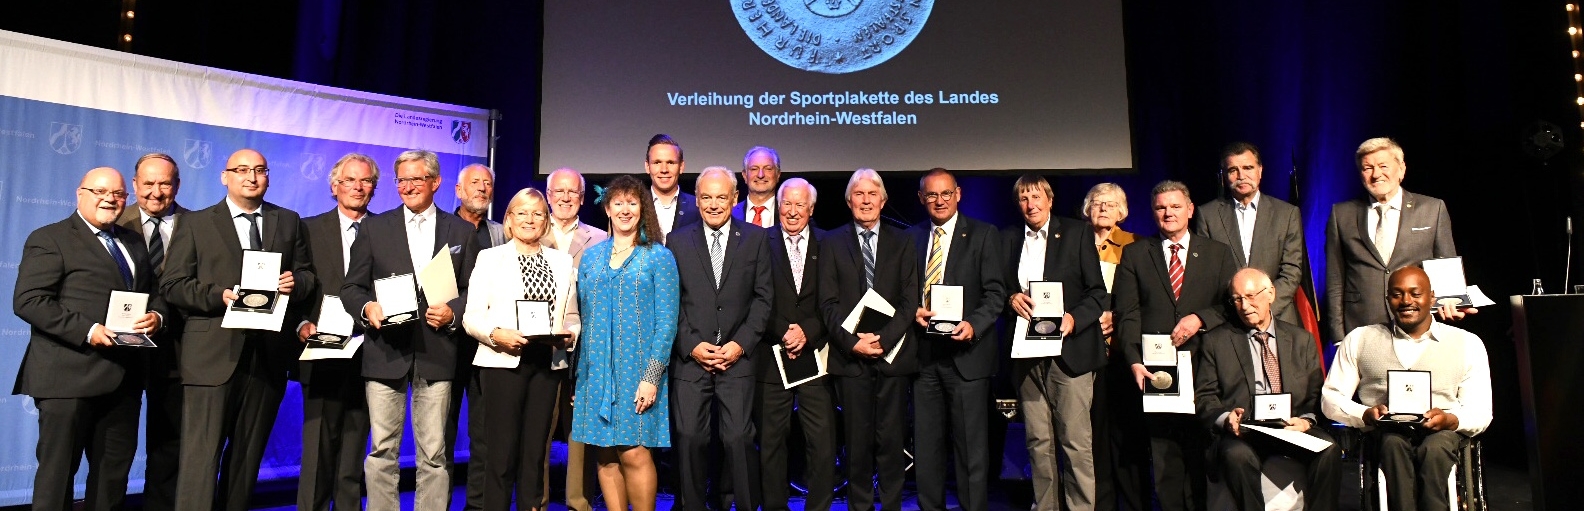 Gruppenfoto auf einer Bühne mit Staatssekretärin Milz im hellblauen Kleid und allen Trägern der Sportplakette.